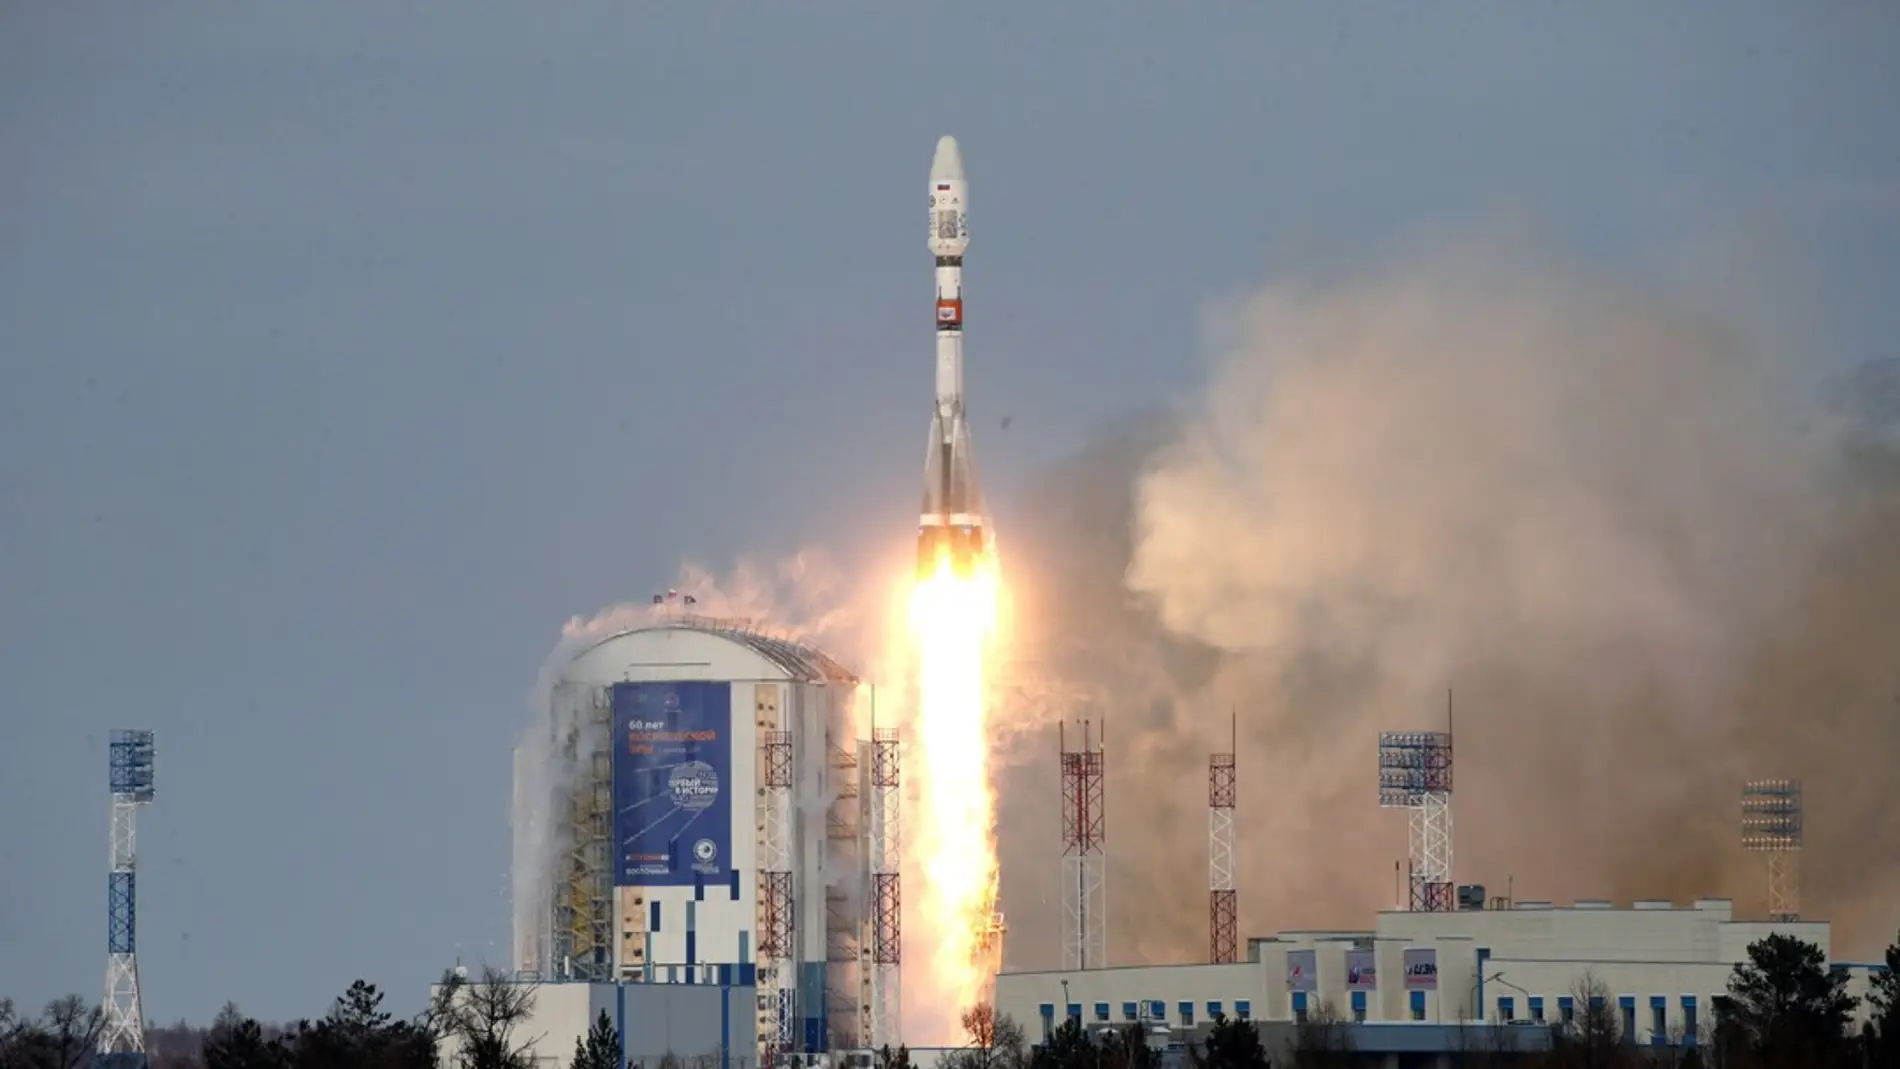 Lanzamiento de un cohete en el cosmódromo Vostochny a las afueras de Tsiolkovsky (Rusia) , en una fotografía de archivo.